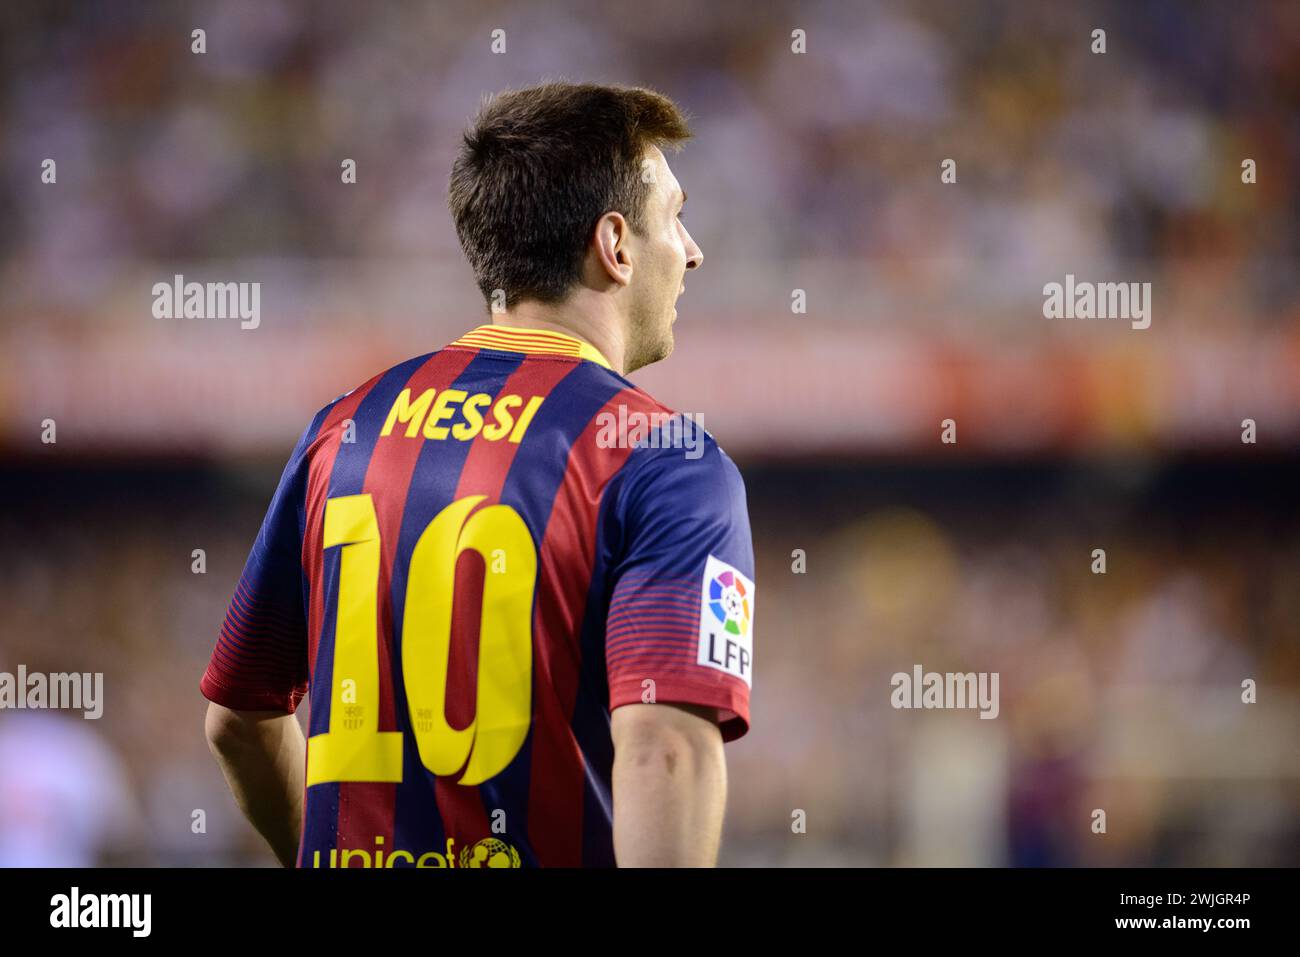 Rückporträt des argentinischen Spielers Lionel Messi während eines Spiels mit dem Trikot Nummer 10 von Barcelona im Mestalla-Stadion in Valencia, Spanien. Stockfoto